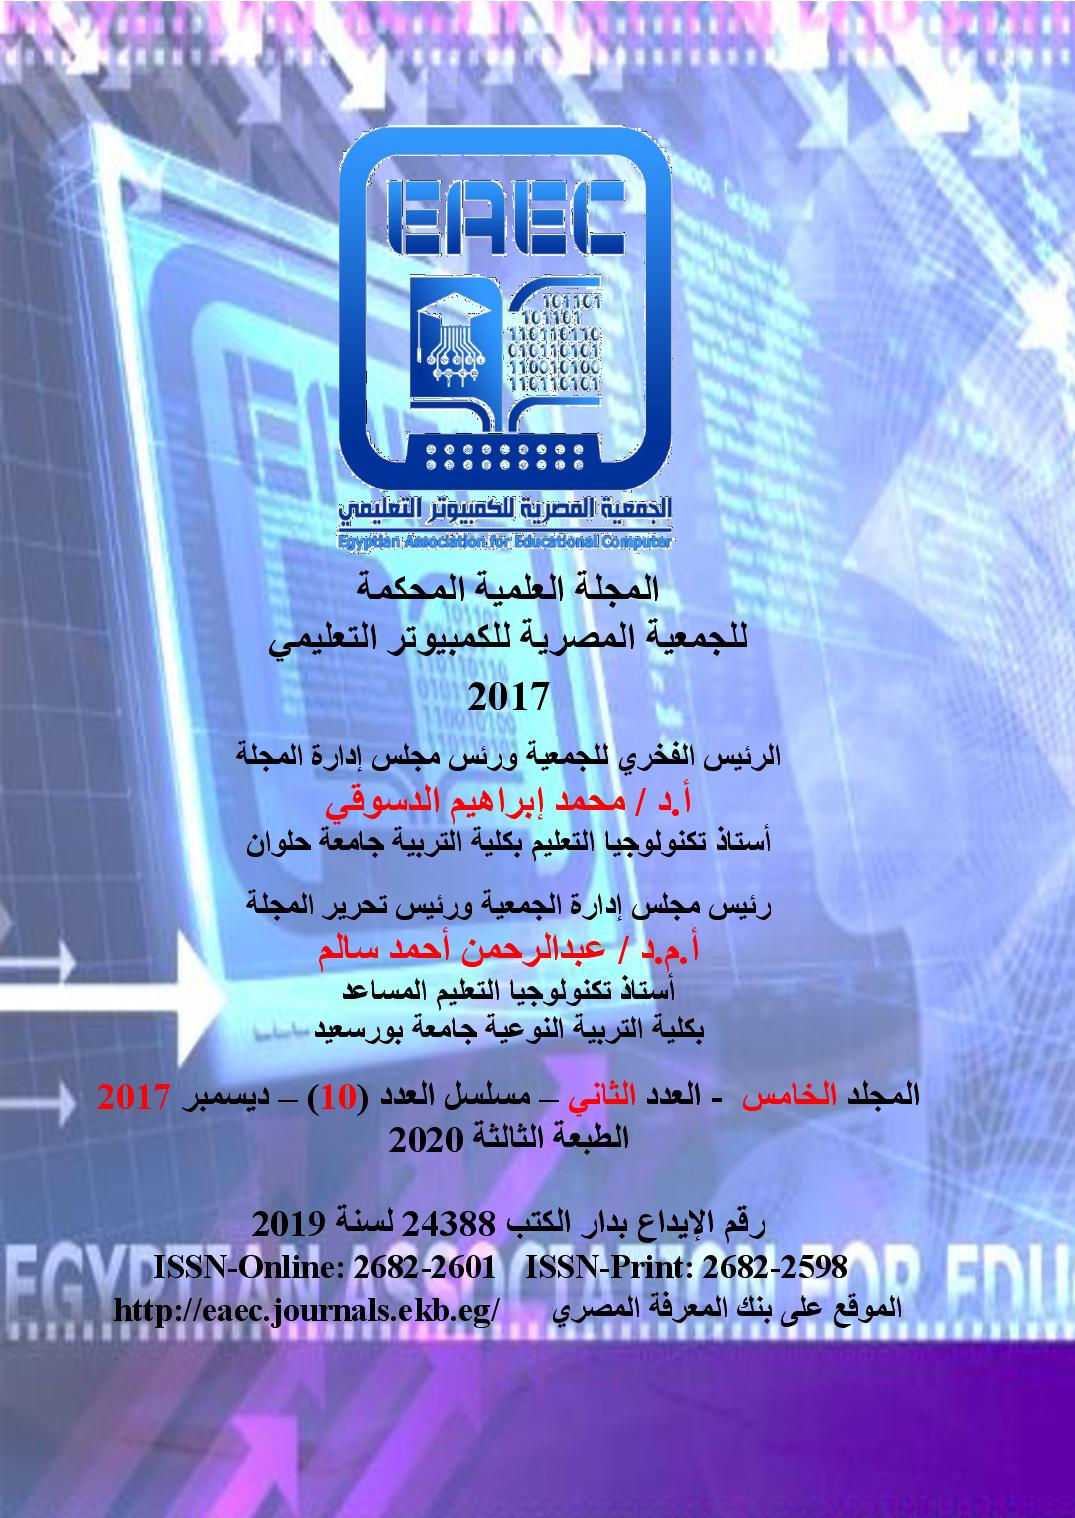 المجلة العلمية للجمعية المصرية للکمبيوتر التعليمي